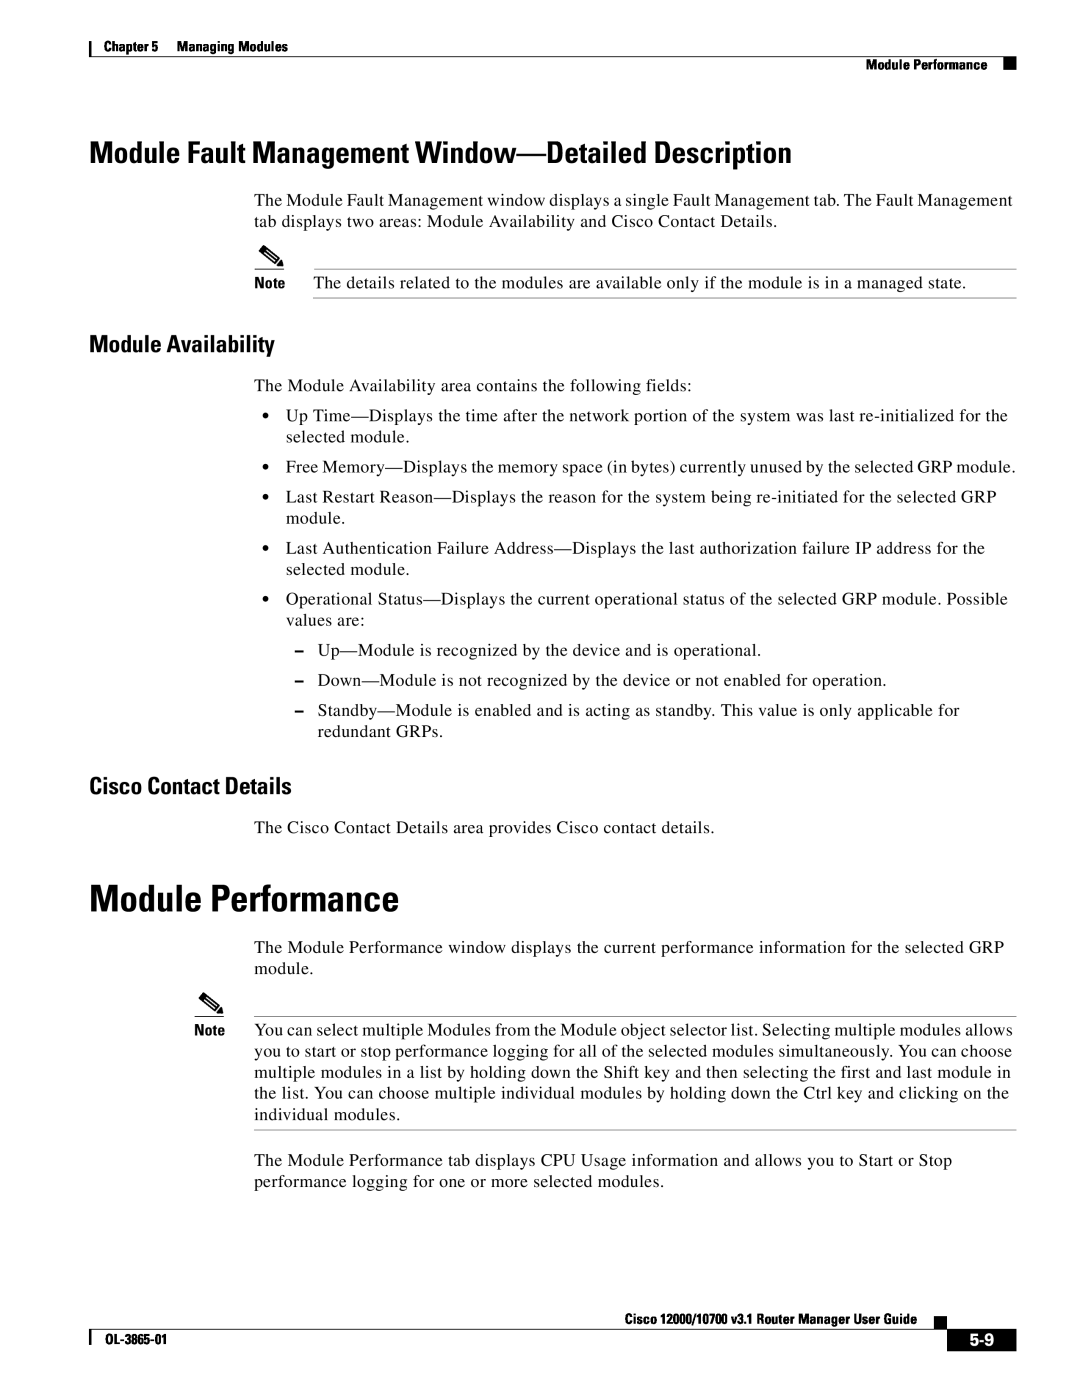 Cisco Systems 10700 manual Module Performance, Module Fault Management Window-Detailed Description, Module Availability 